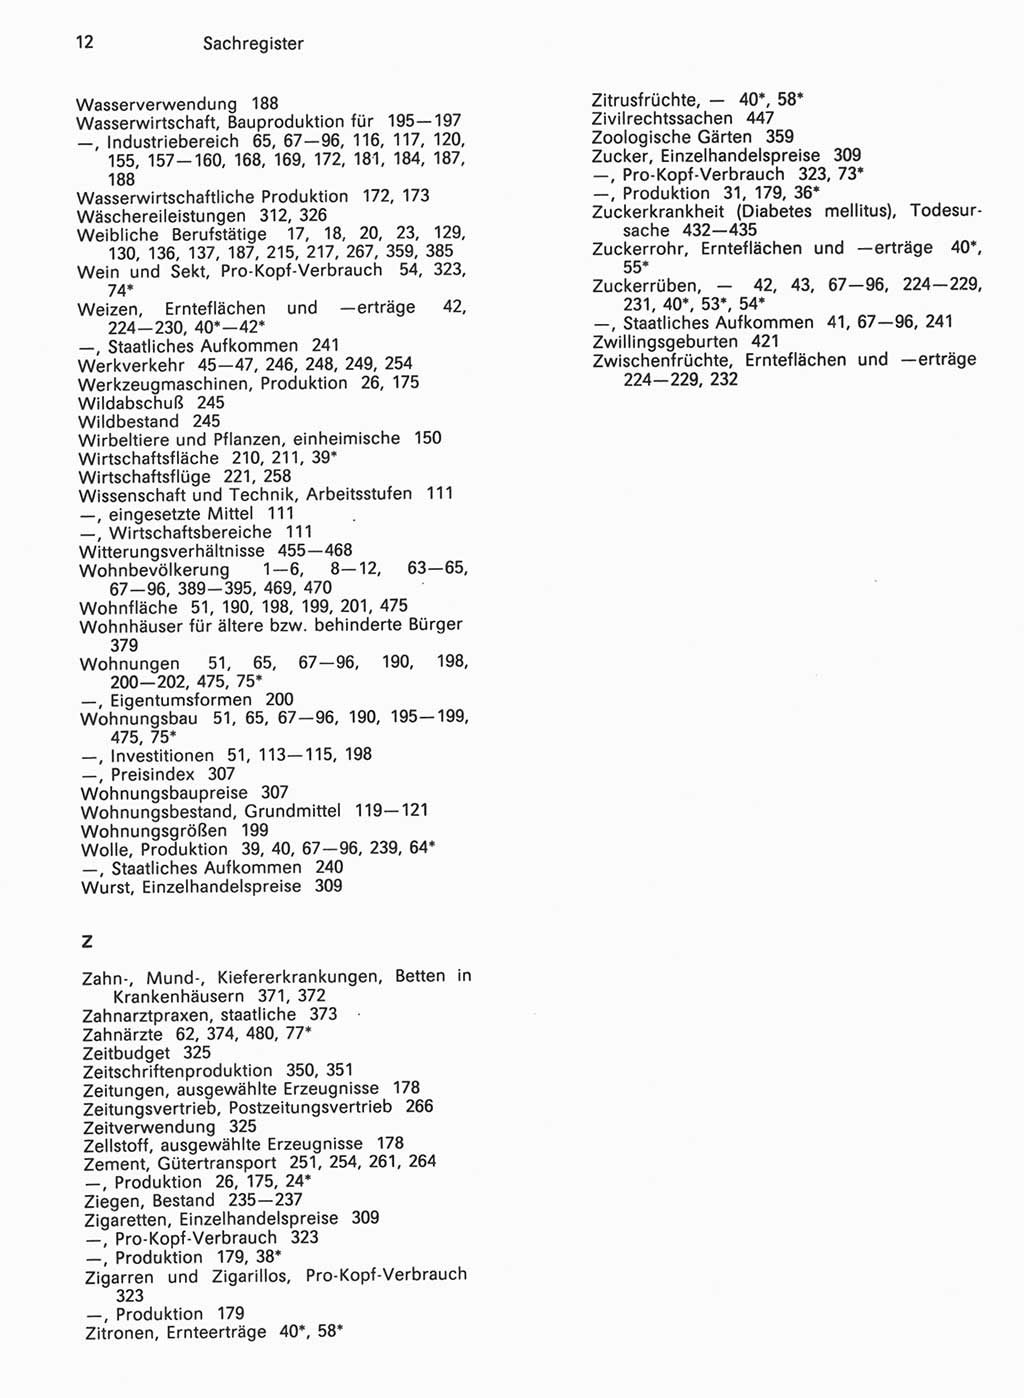 Statistisches Jahrbuch der Deutschen Demokratischen Republik (DDR) 1990, Seite 12 (Stat. Jb. DDR 1990, S. 12)